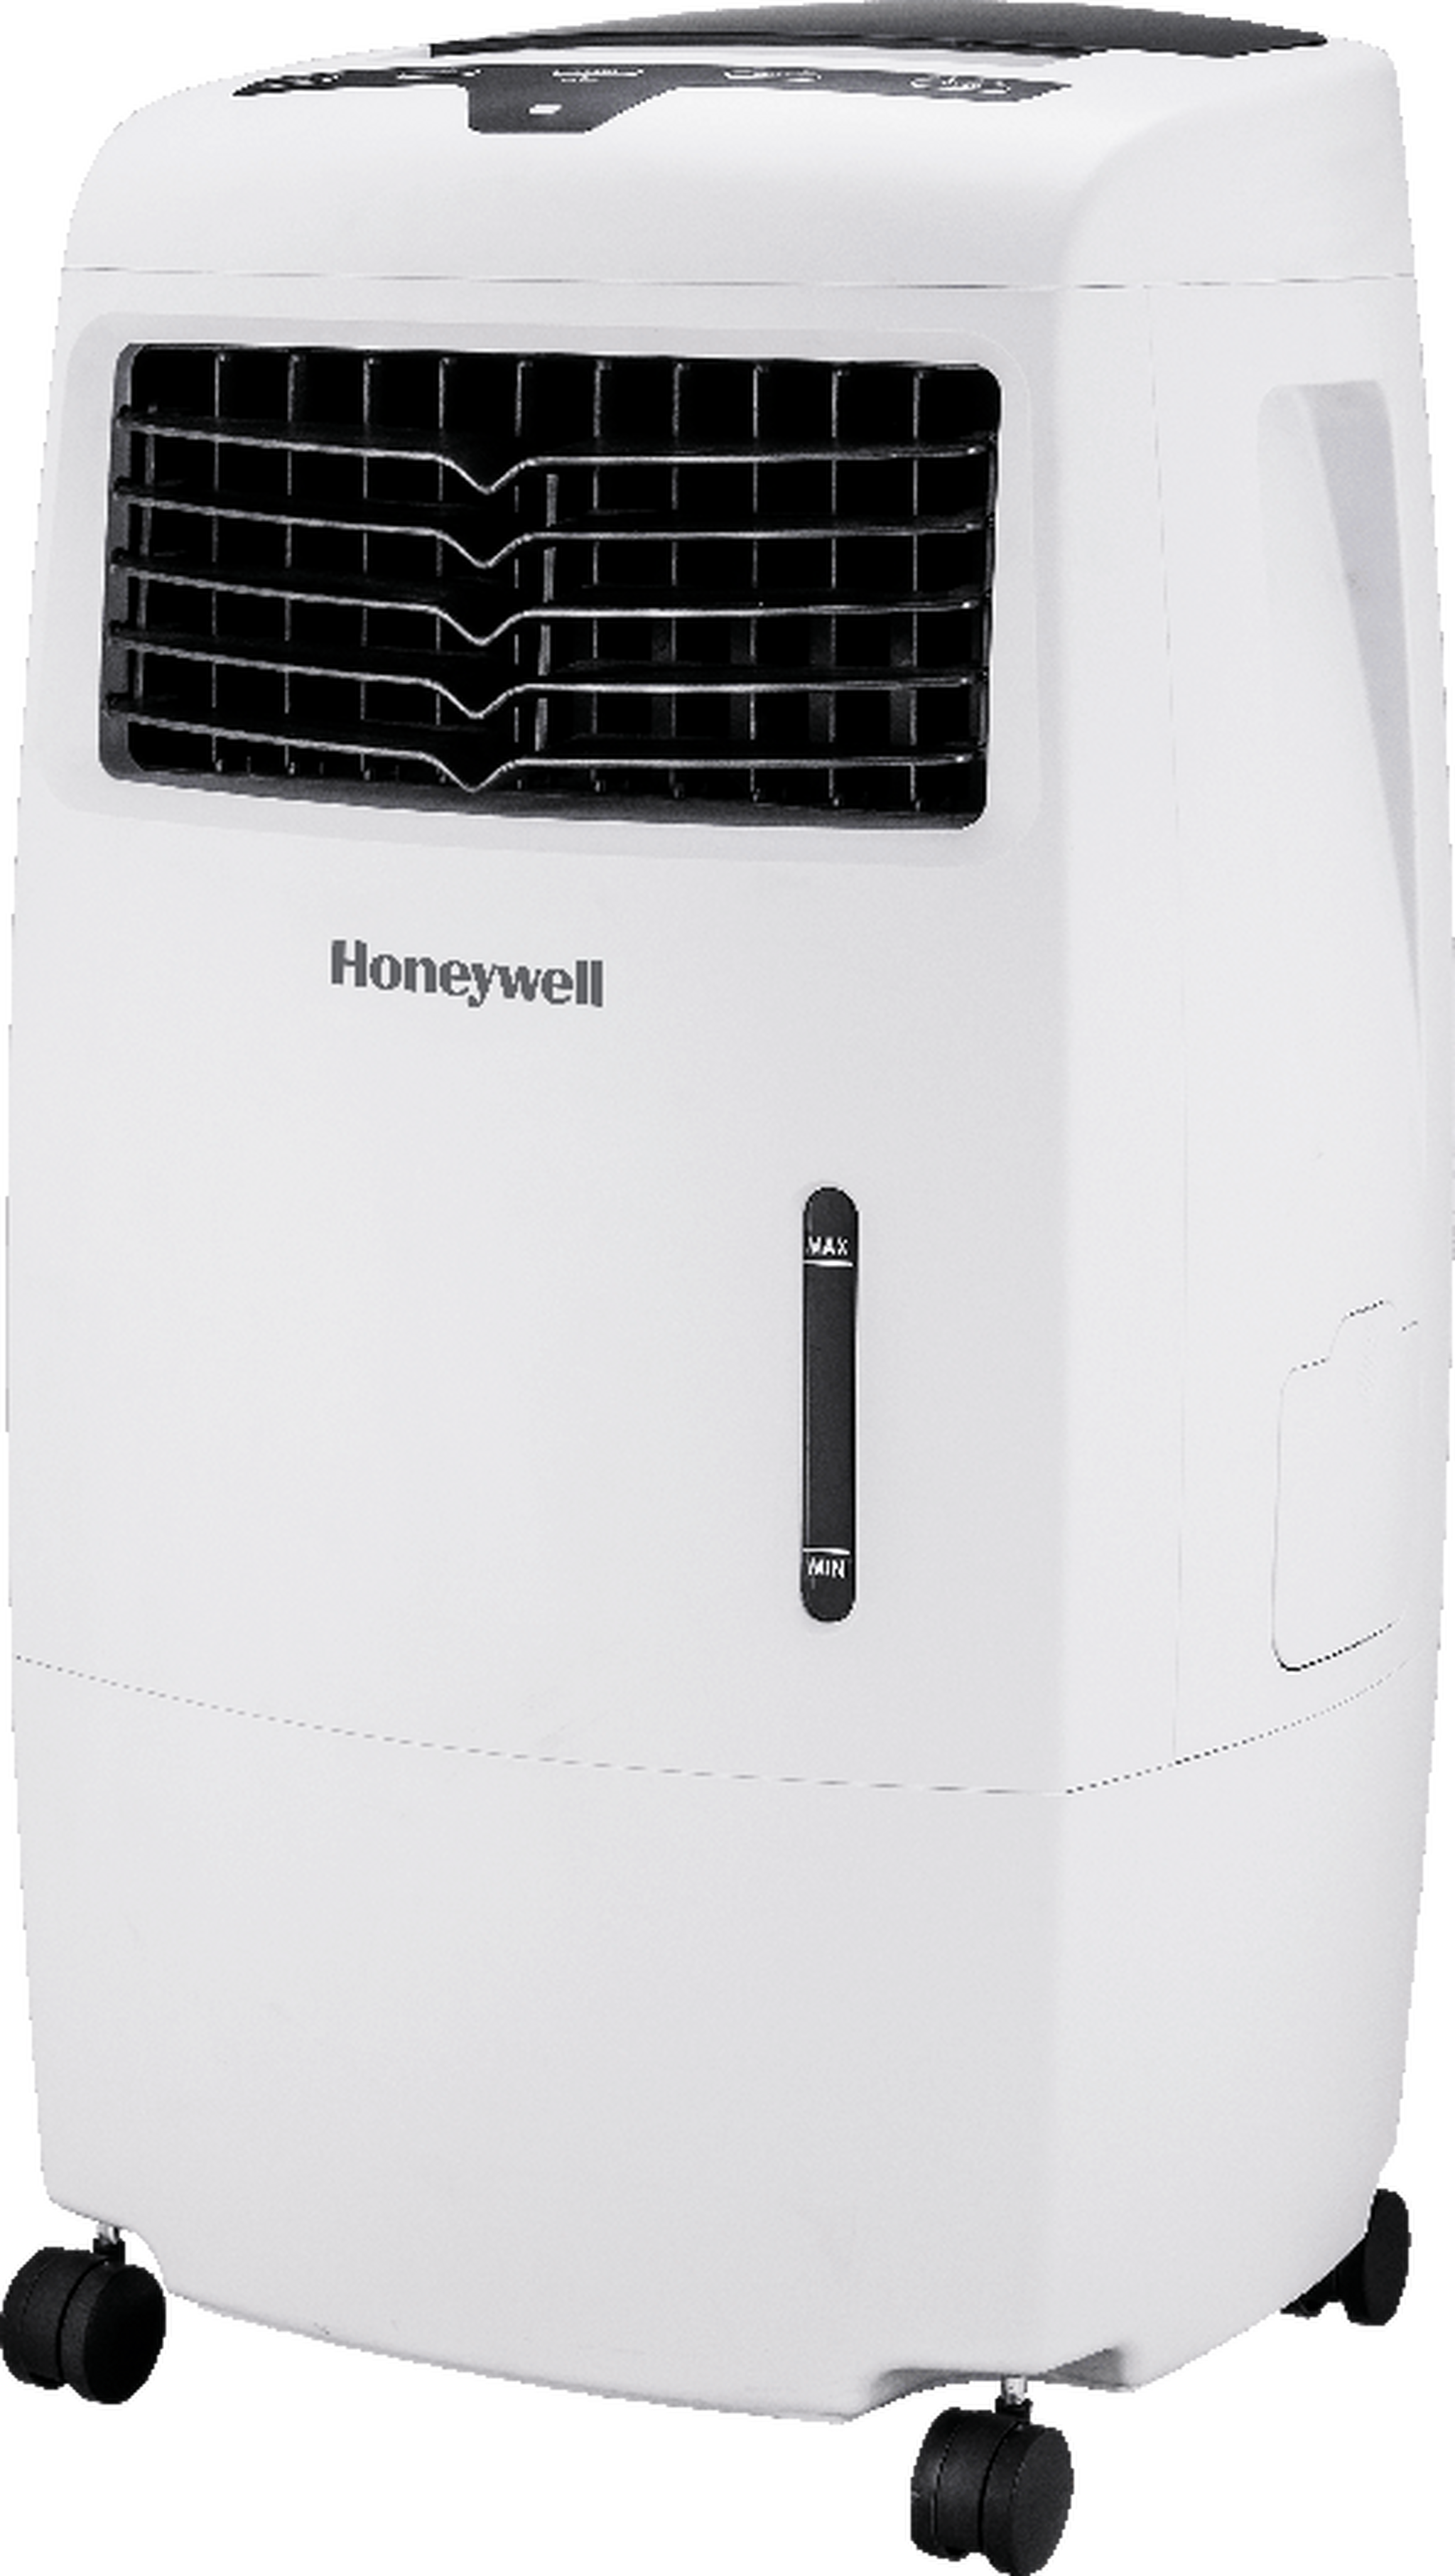 Honeywell 25L Air Cooler (CL25AE)